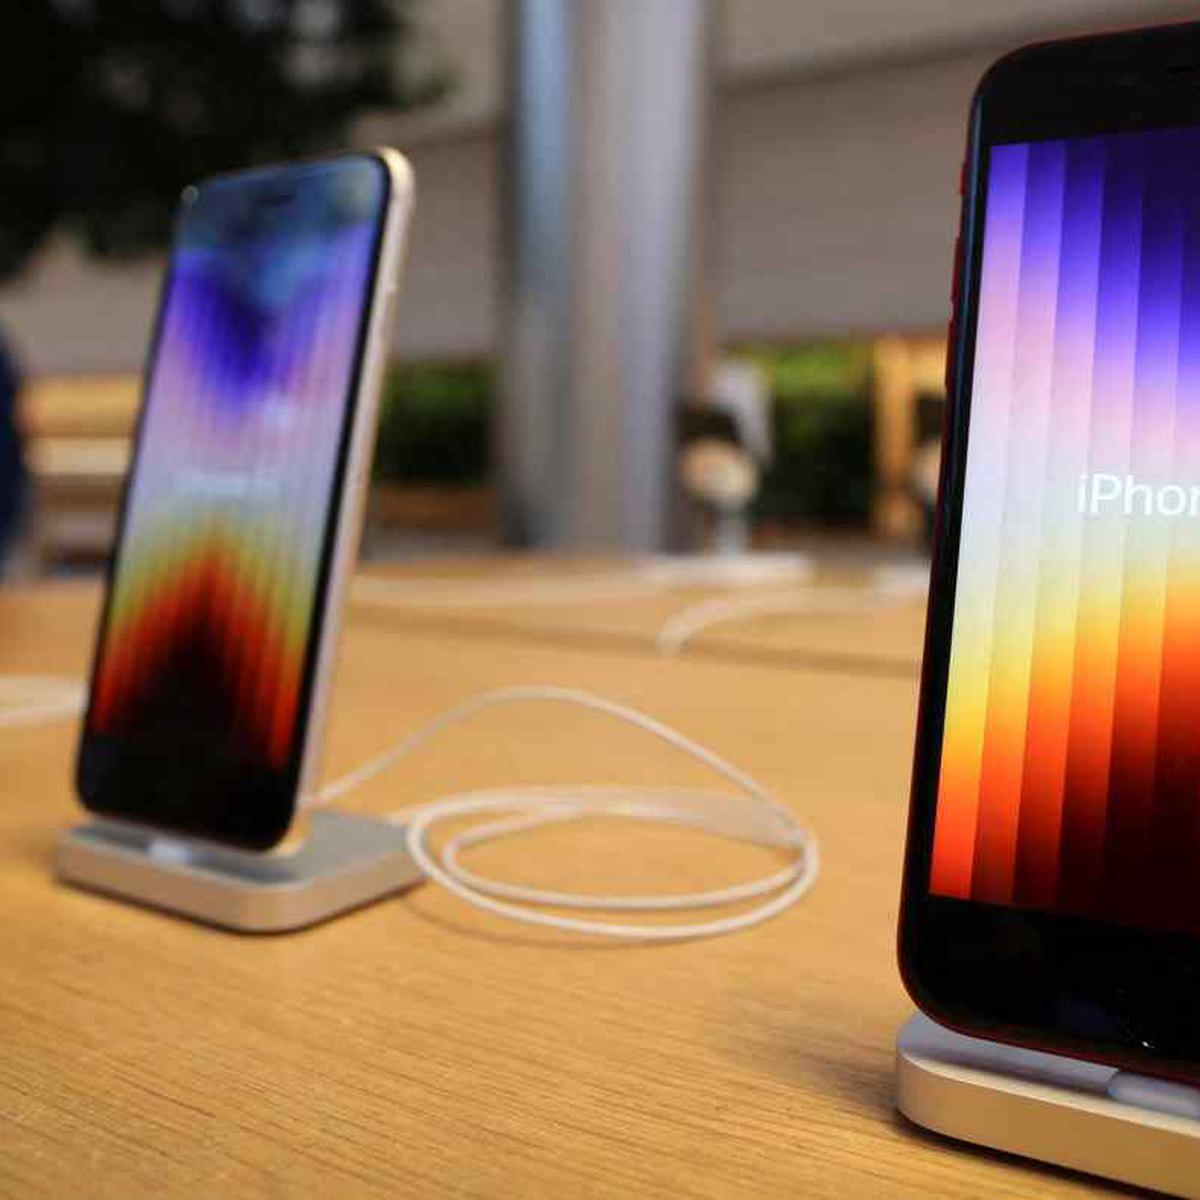 Apple prepara un iPhone barato y empiezan las filtraciones ¿será